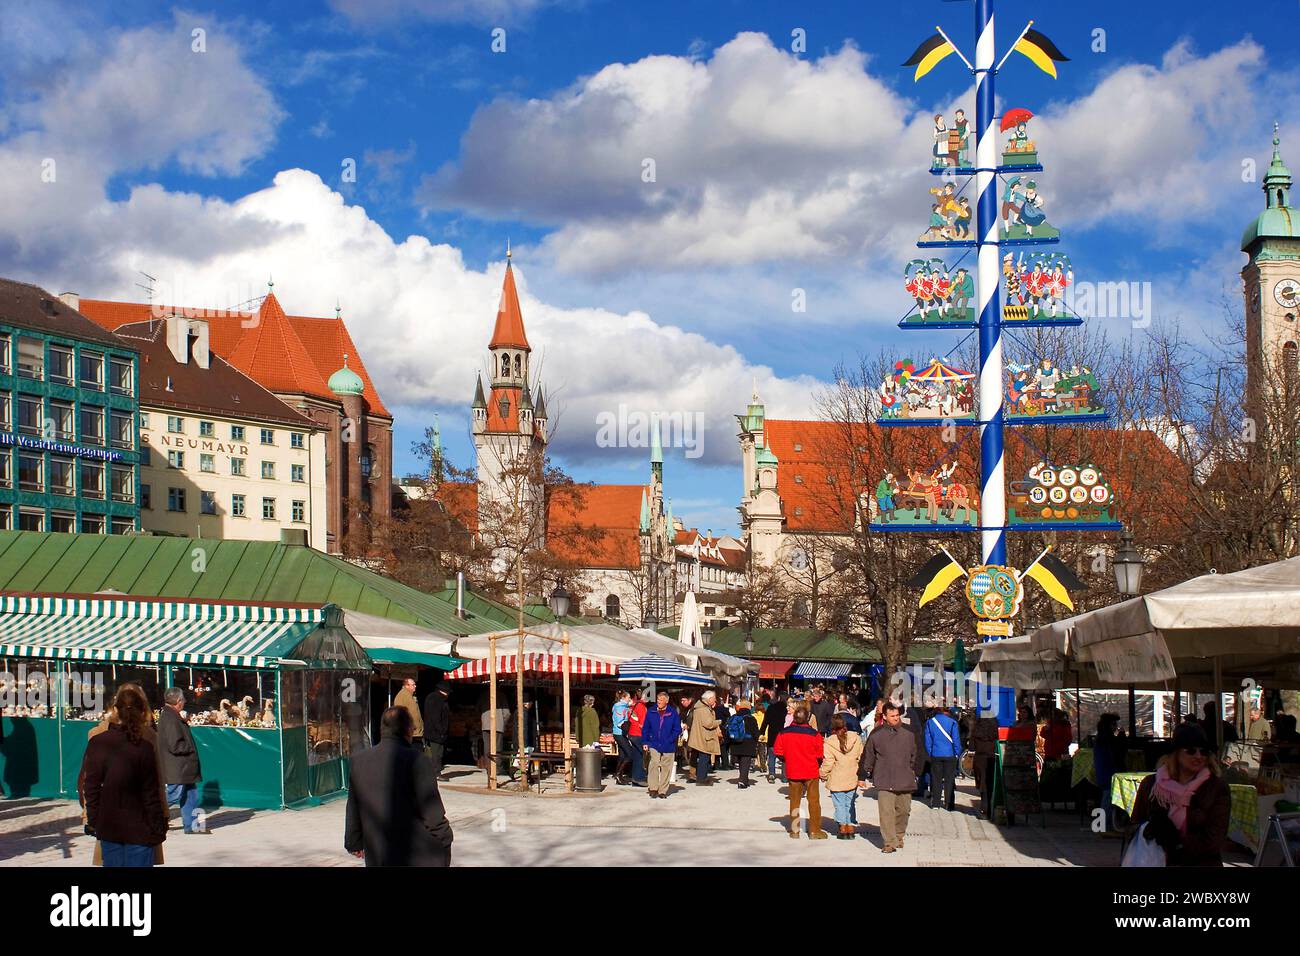 L'affollato mercato alimentare Viktualienmarkt nel mese di febbraio, inverno, potrebbe essere al centro, torre del vecchio municipio sullo sfondo, Monaco, Baviera, Germania, E. Foto Stock